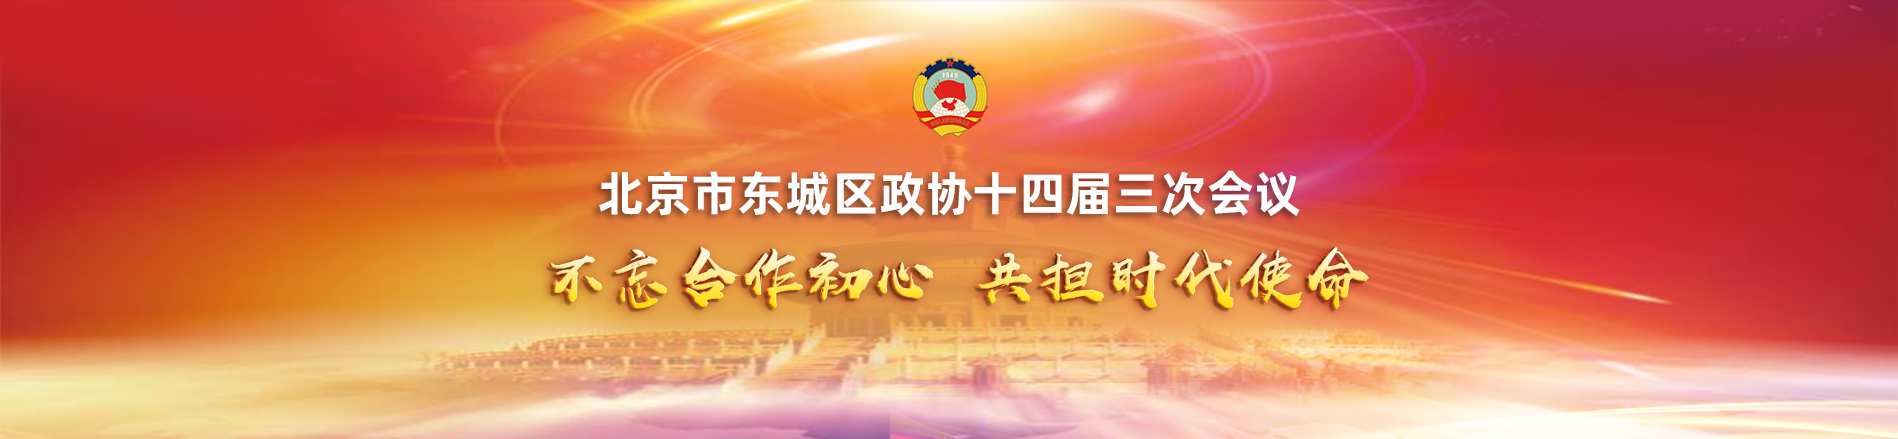 北京市东城区政协十四届三次会议